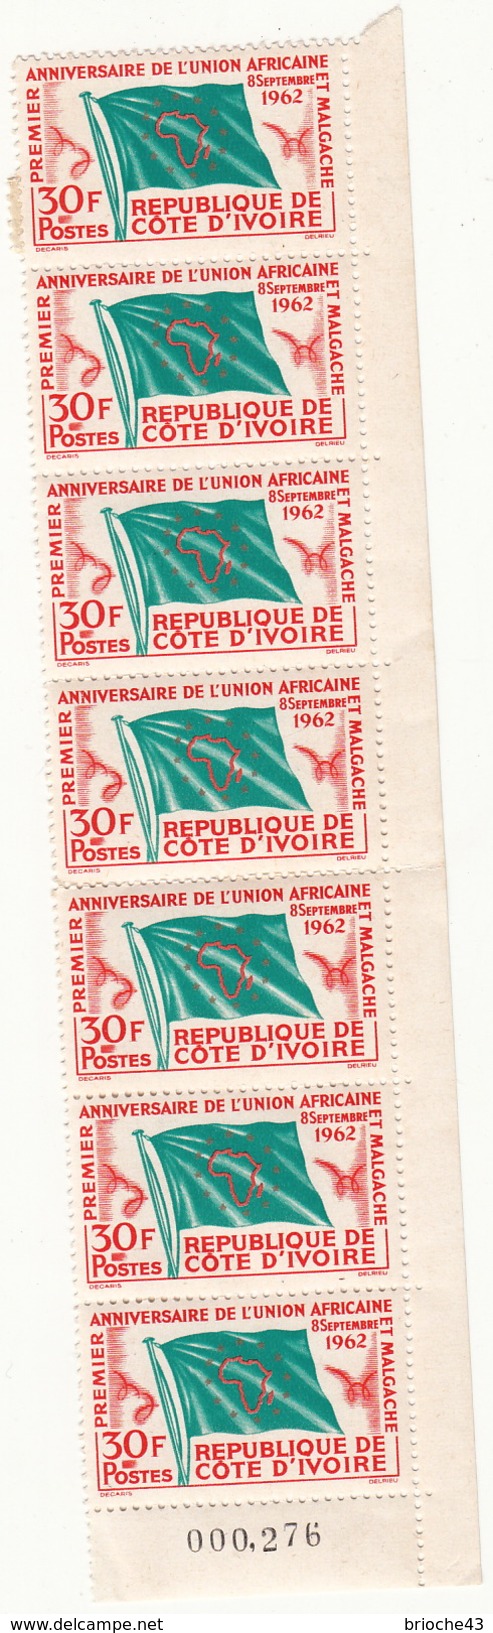 REPUBLIQUE DE COTE D'IVOIRE - BANDE 7 TIMBRES 30F ANNIVERSAIRE DE L'UNION AFRICAINE 8 SEPTEMBRE 1962 - 6090 - Collections (sans Albums)